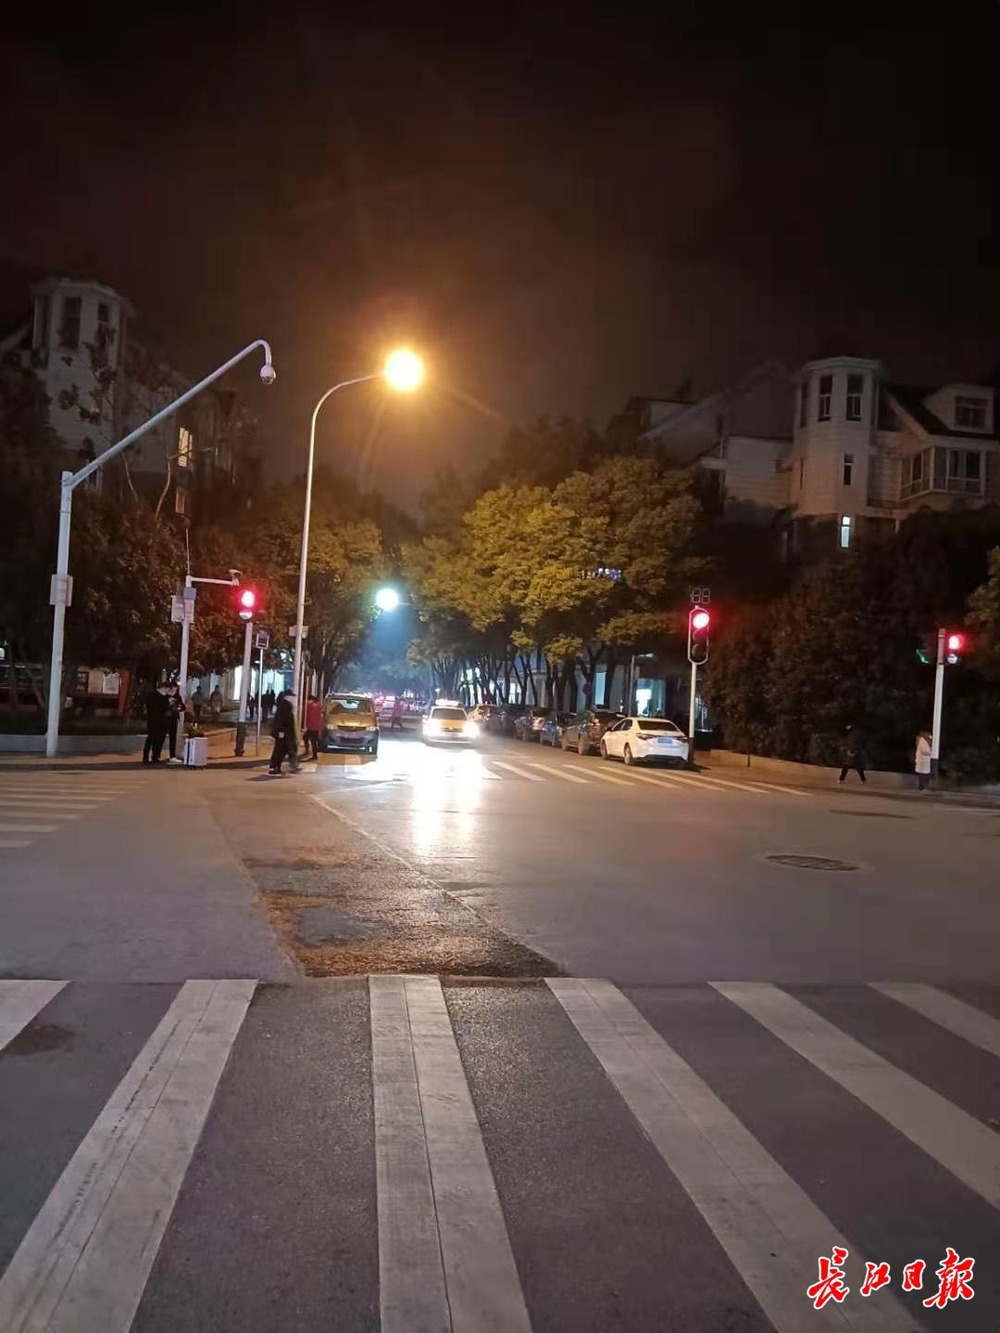 Come progettare il progetto di lampada stradale urbana